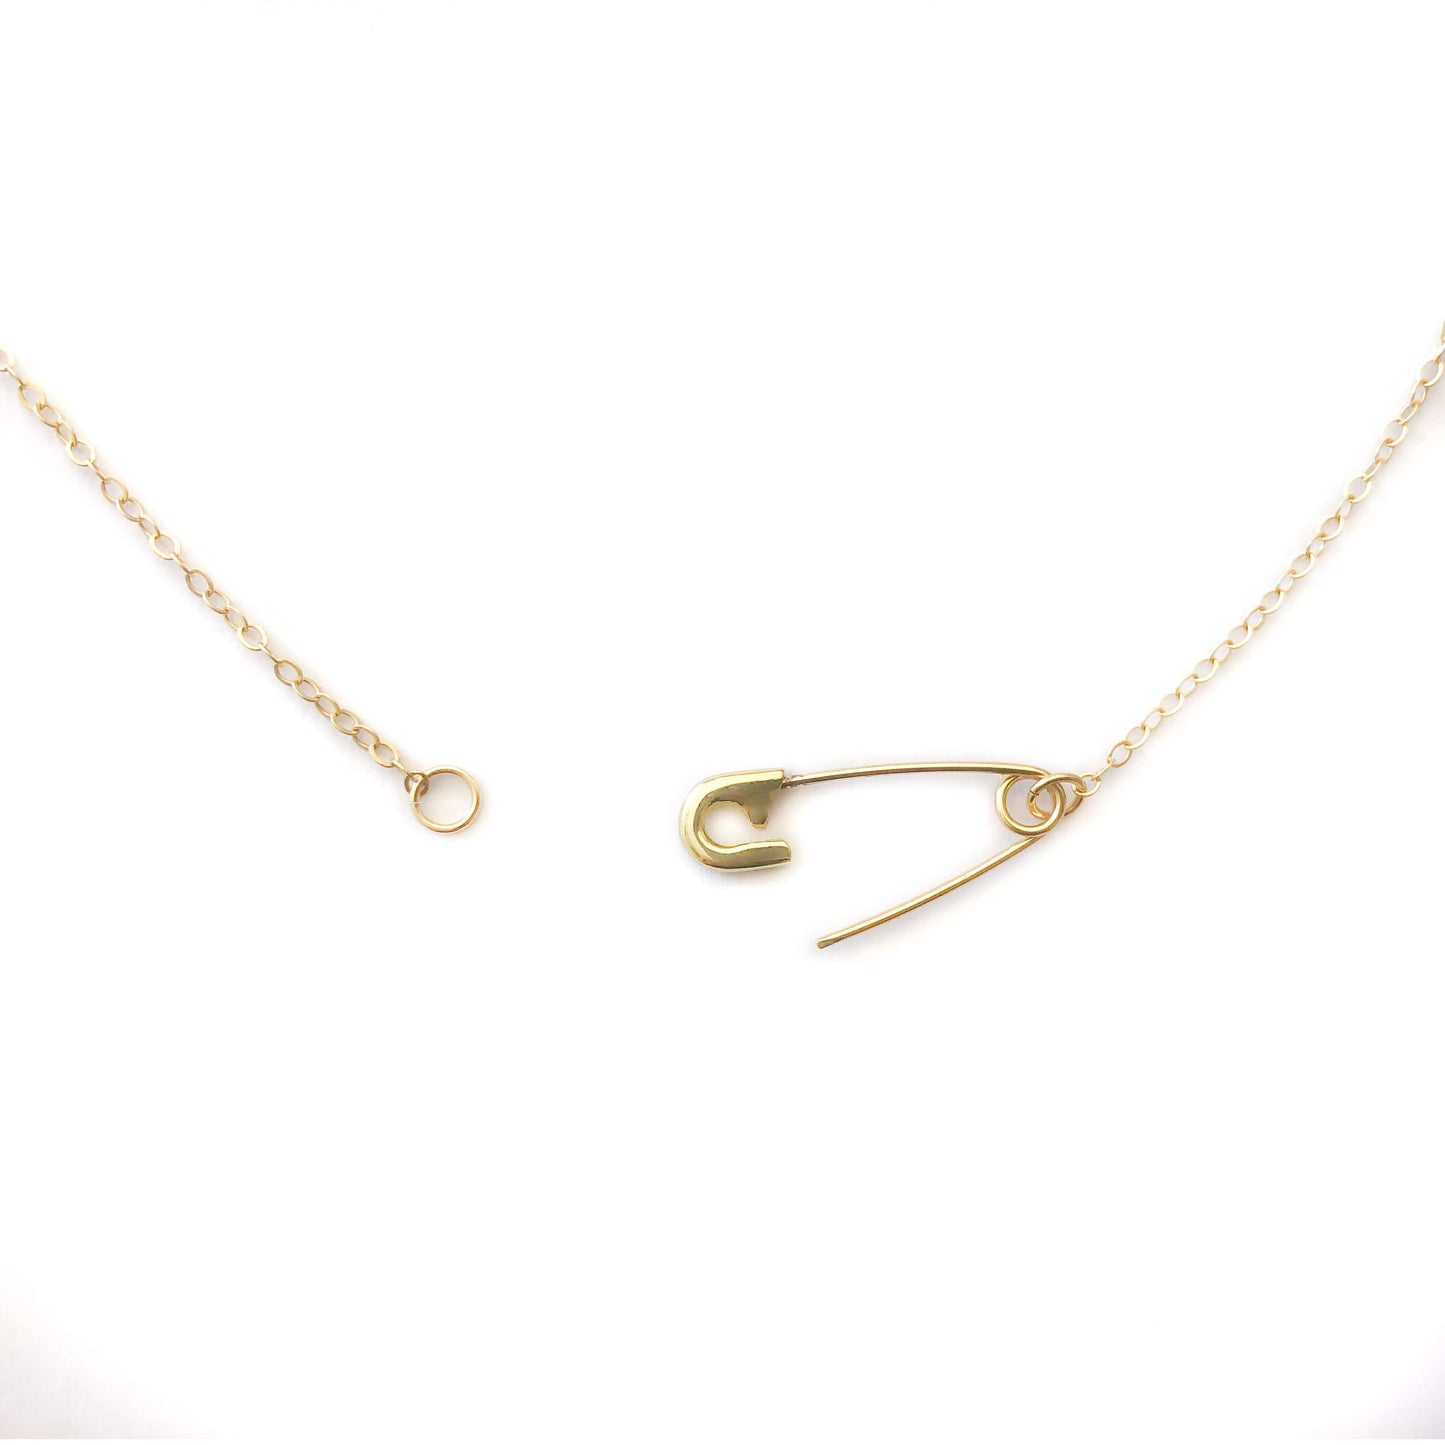 Safety Pin Necklace - 14k yellow gold - Futaba Hayashi